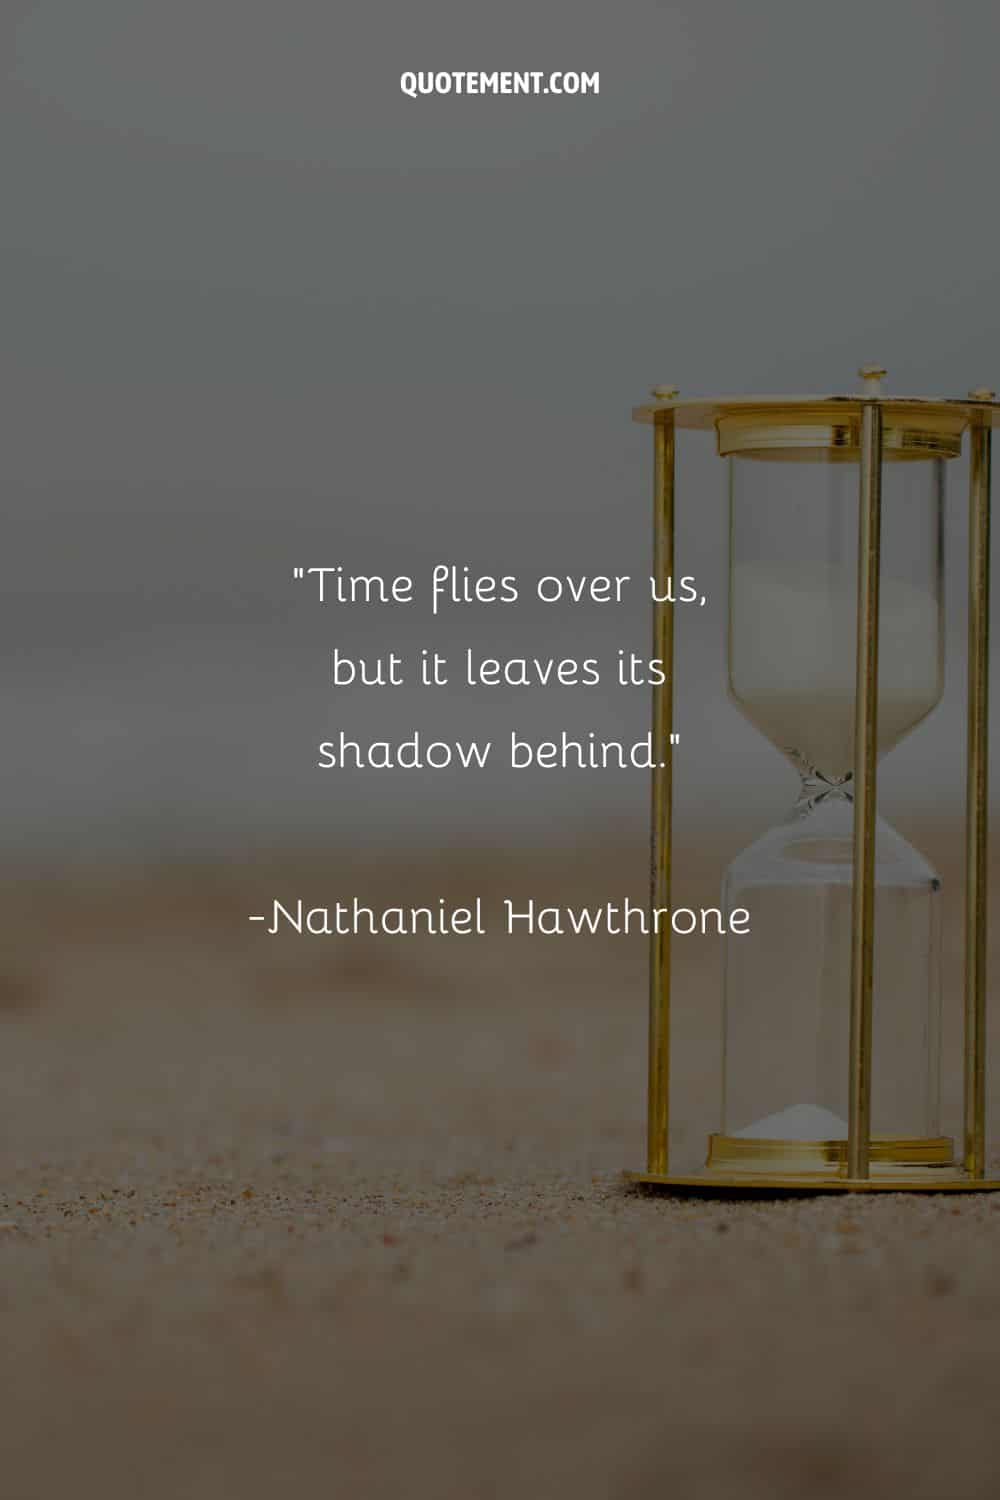 un reloj de arena dorado que representa una cita que invita a la reflexión el tiempo pasa volando